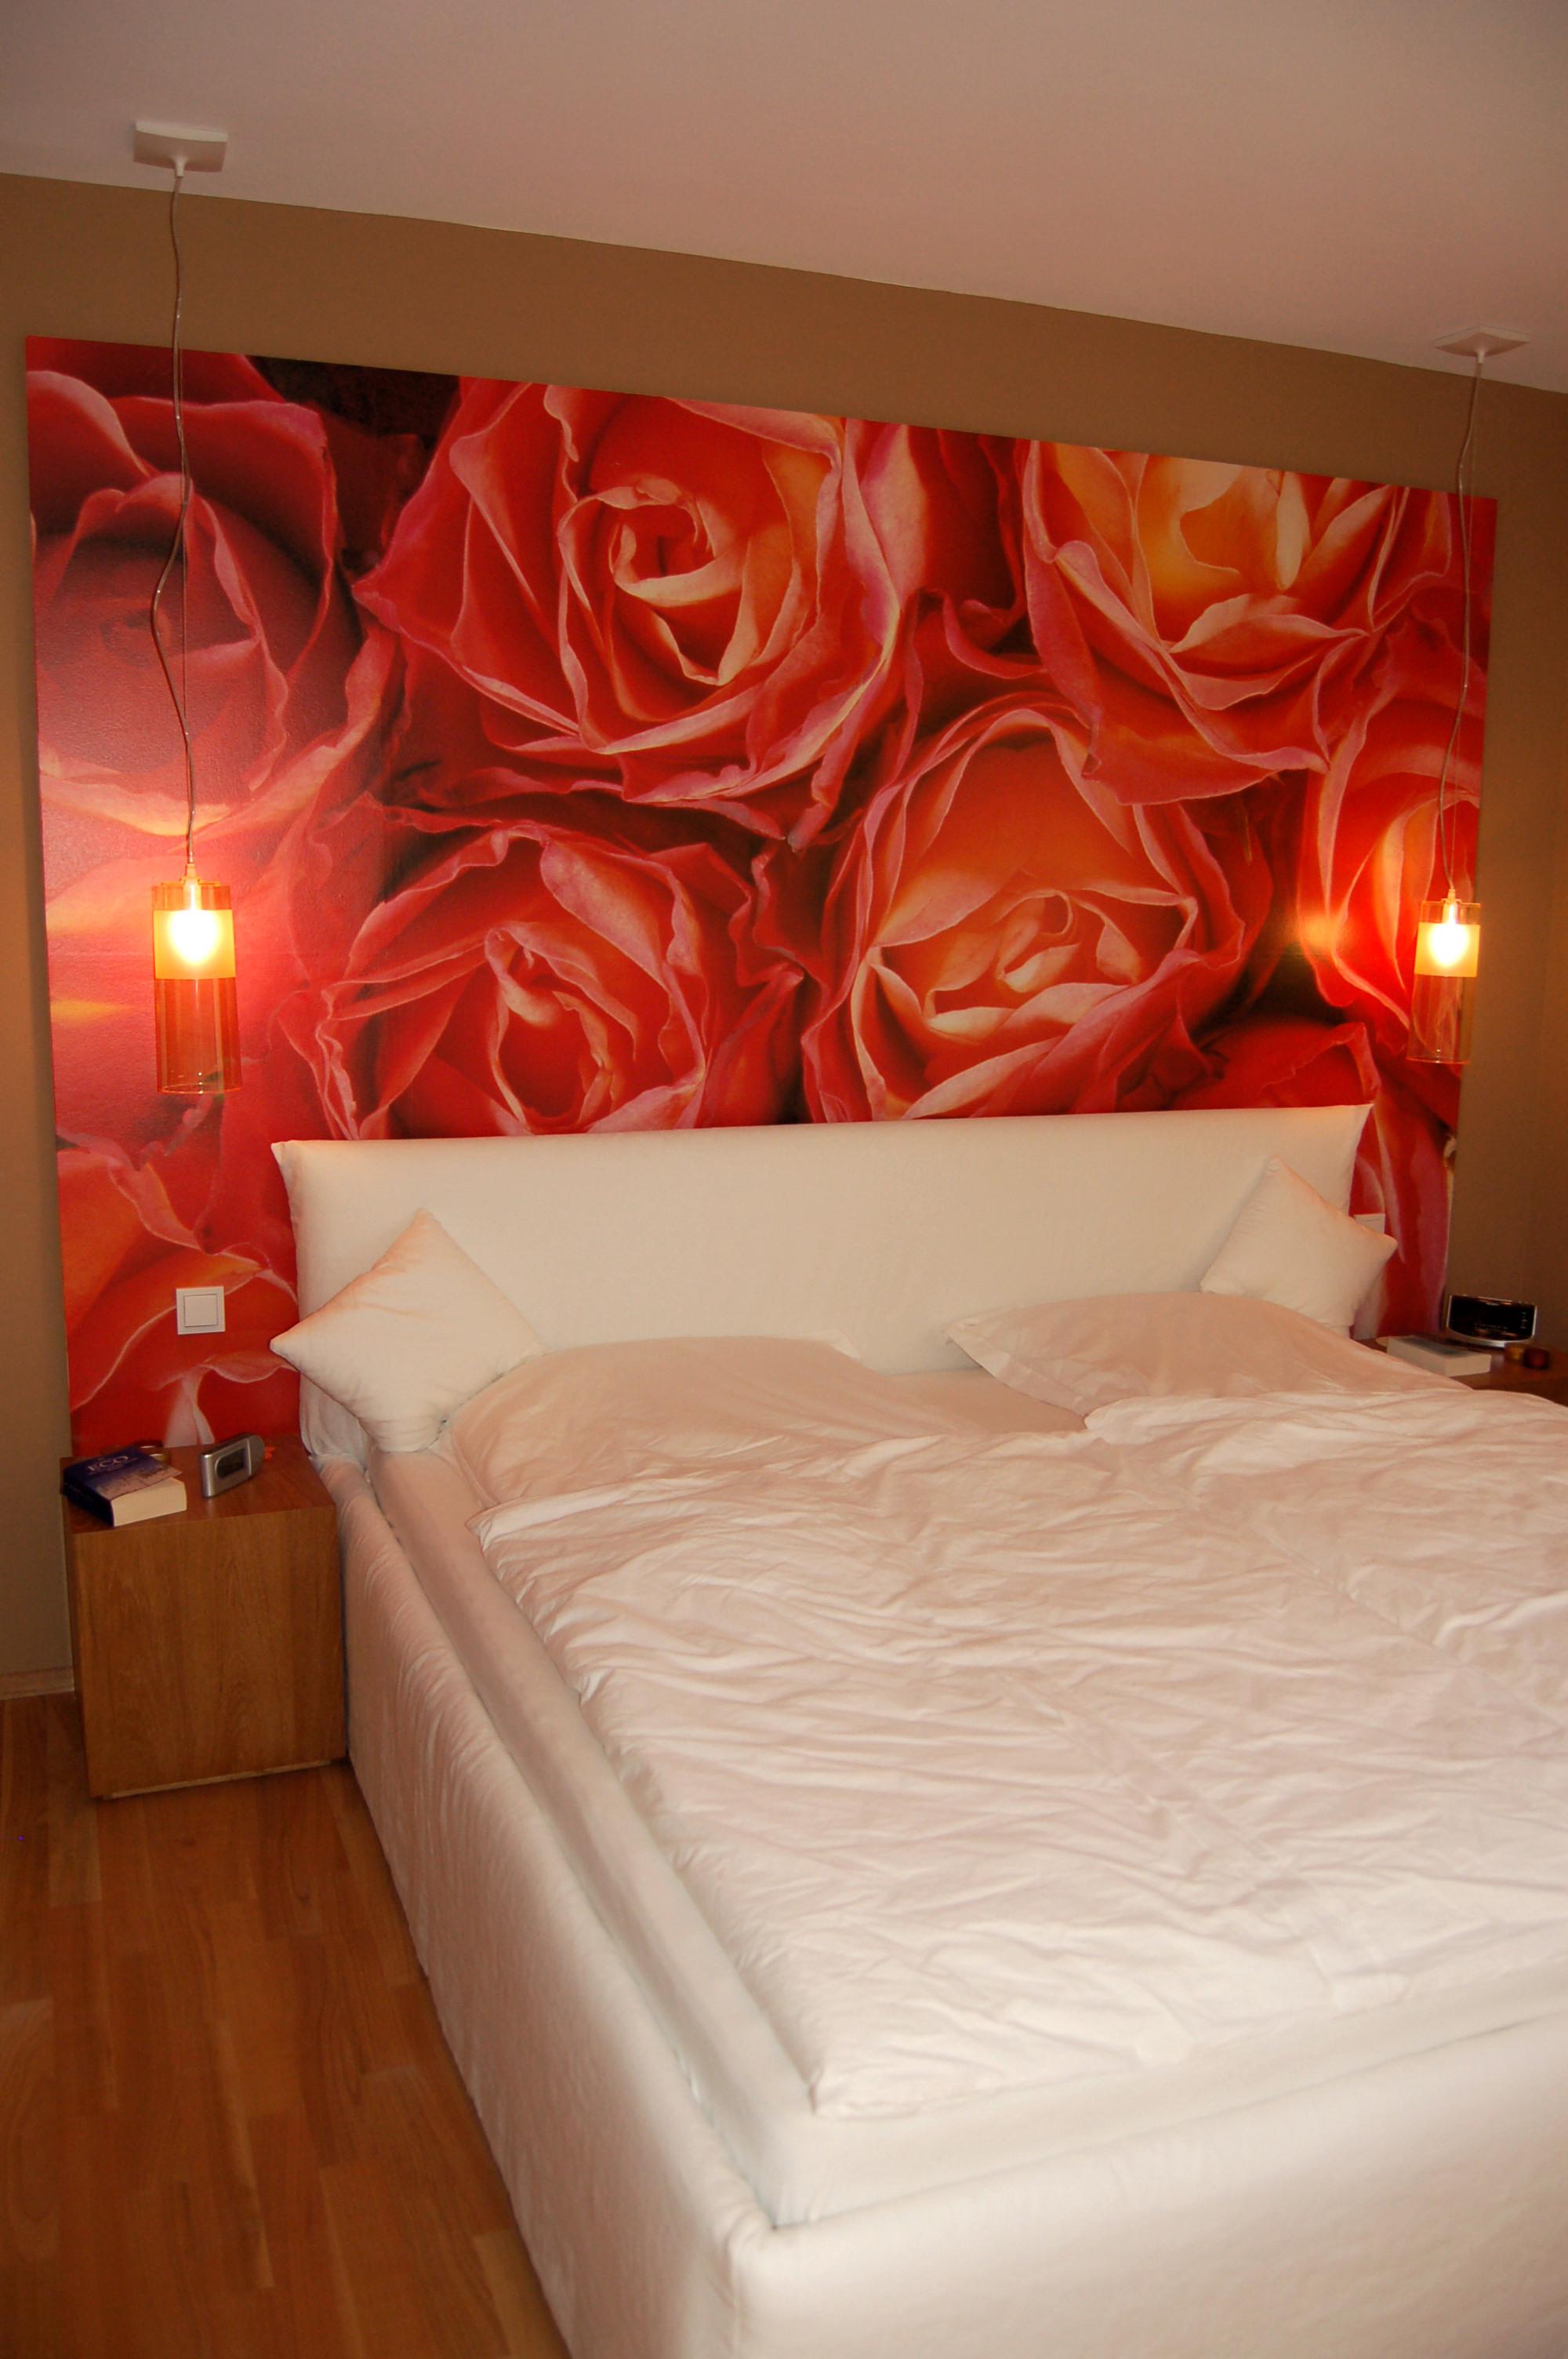 Schlafzimmer mit Rosen #wandleuchte #fototapete #schlafzimmergestalten ©Yvette Sillo